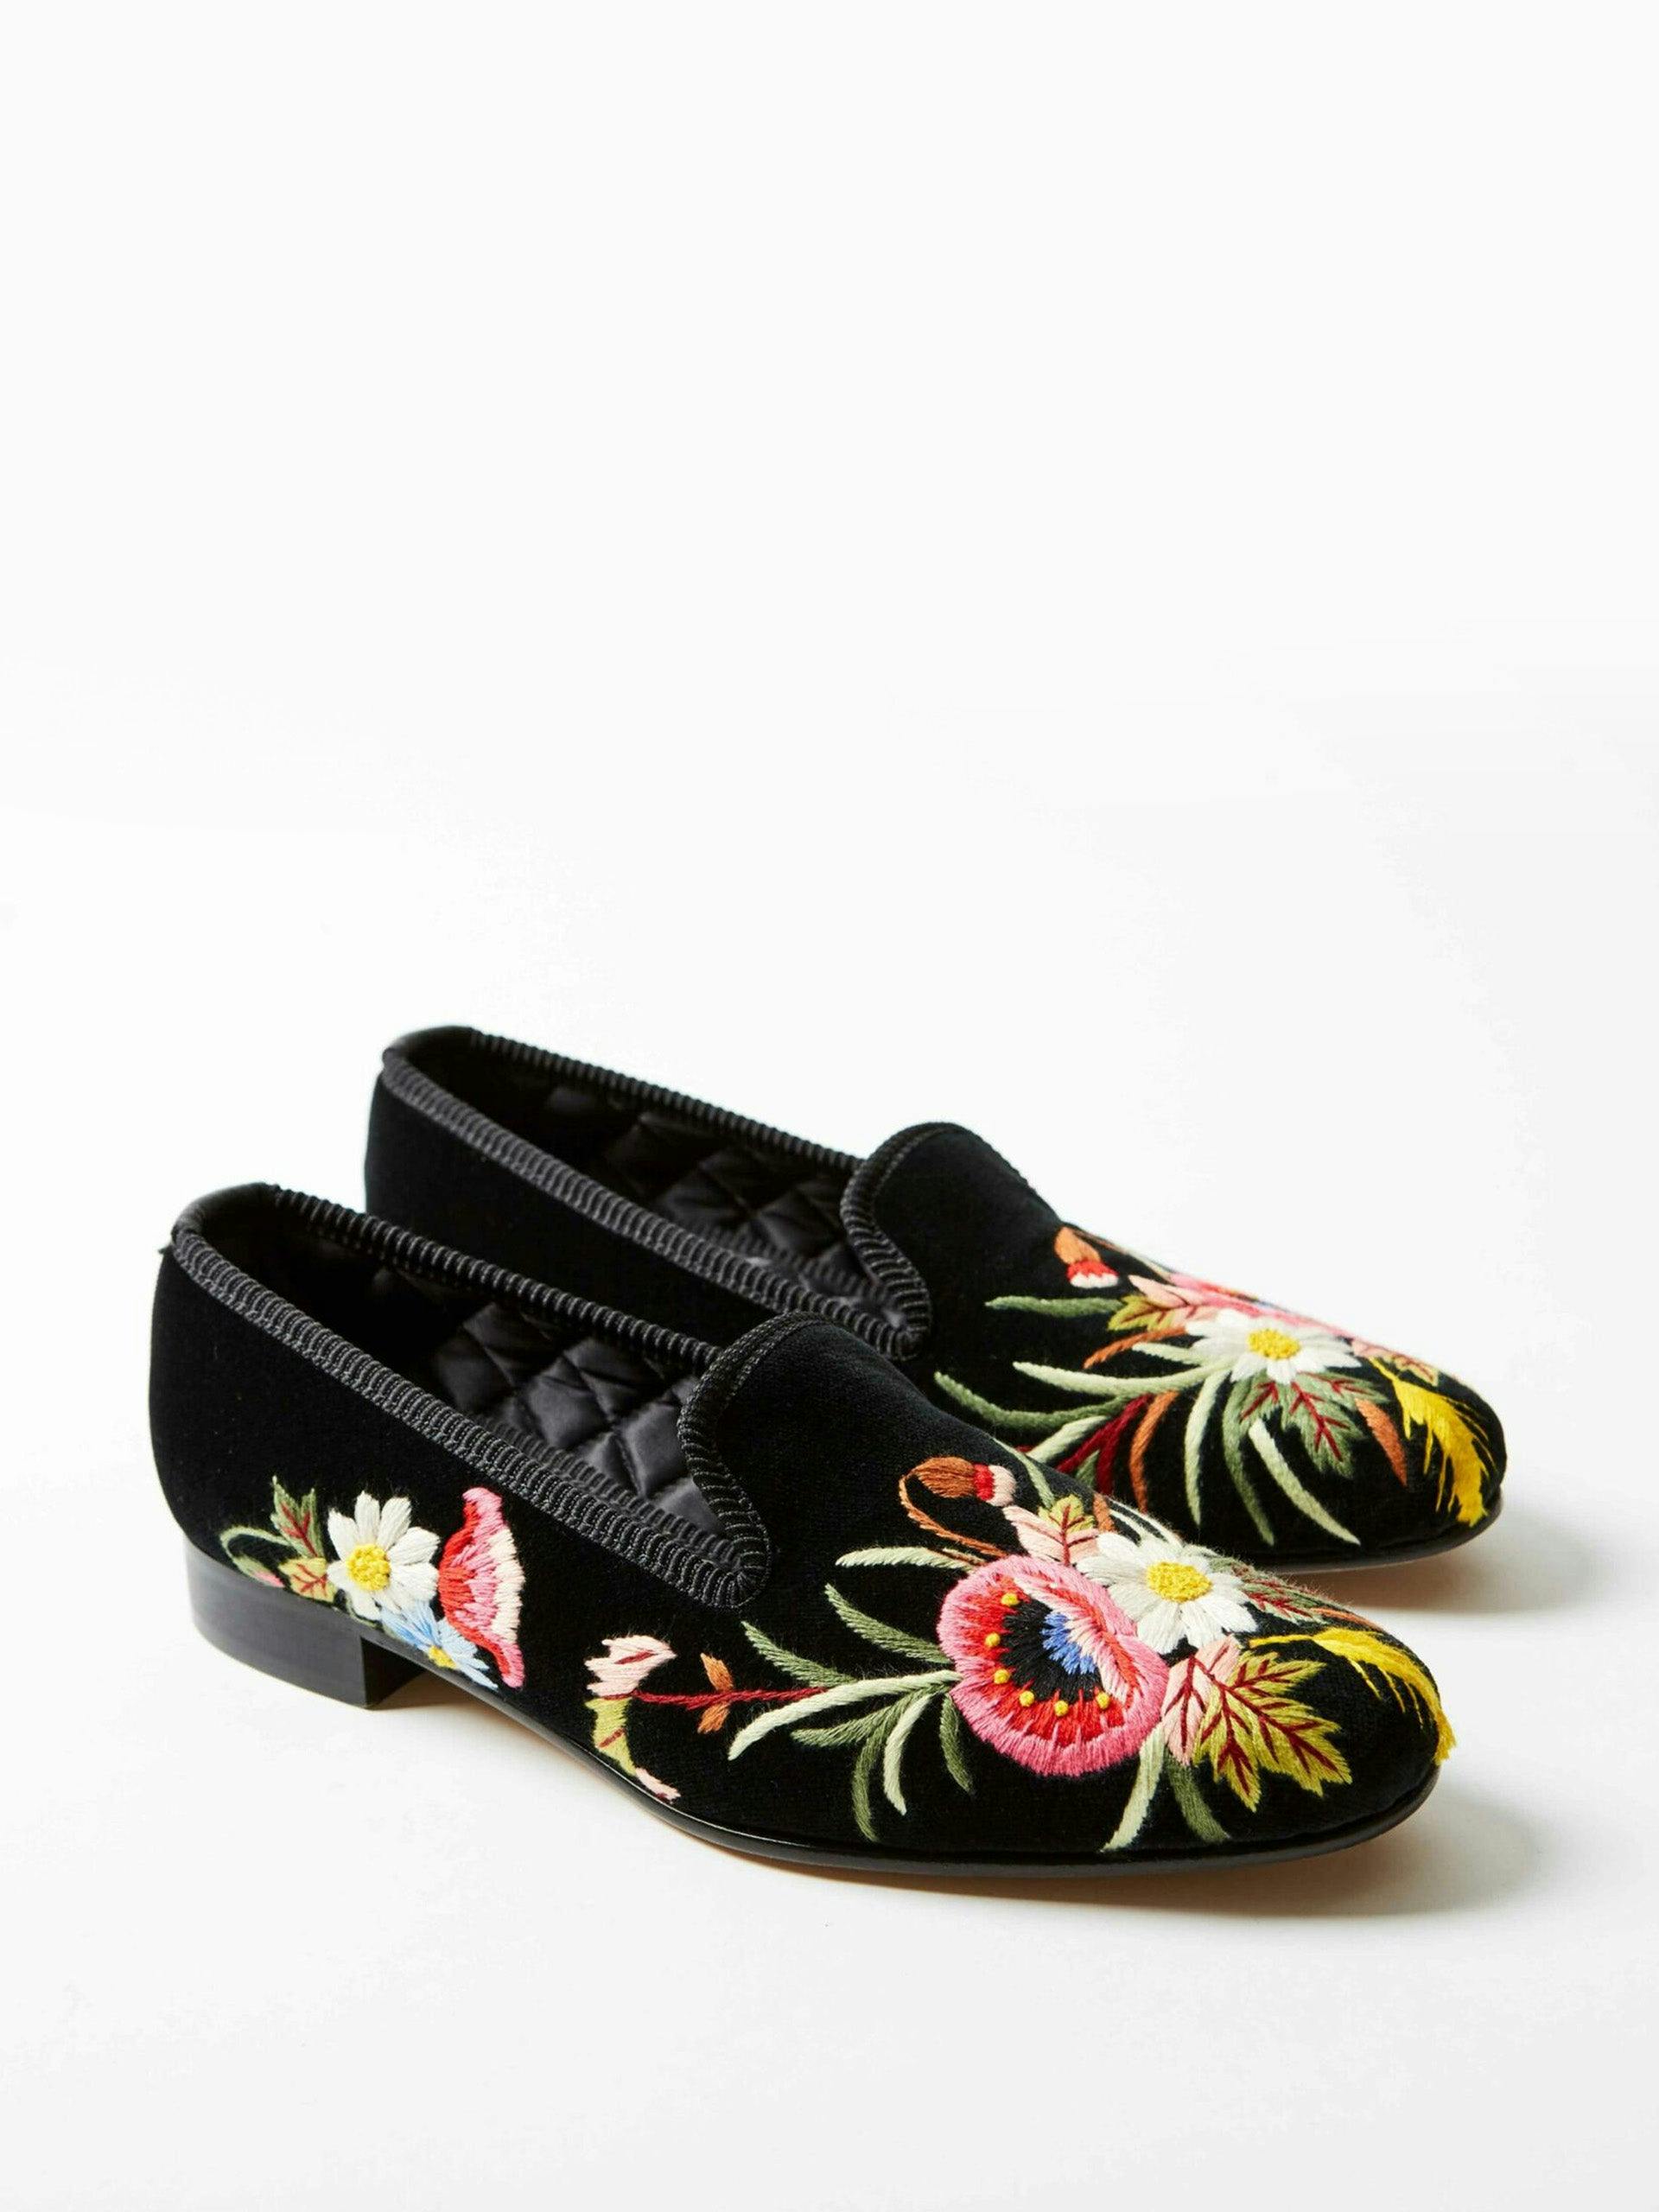 Black velvet embroidered albert slippers